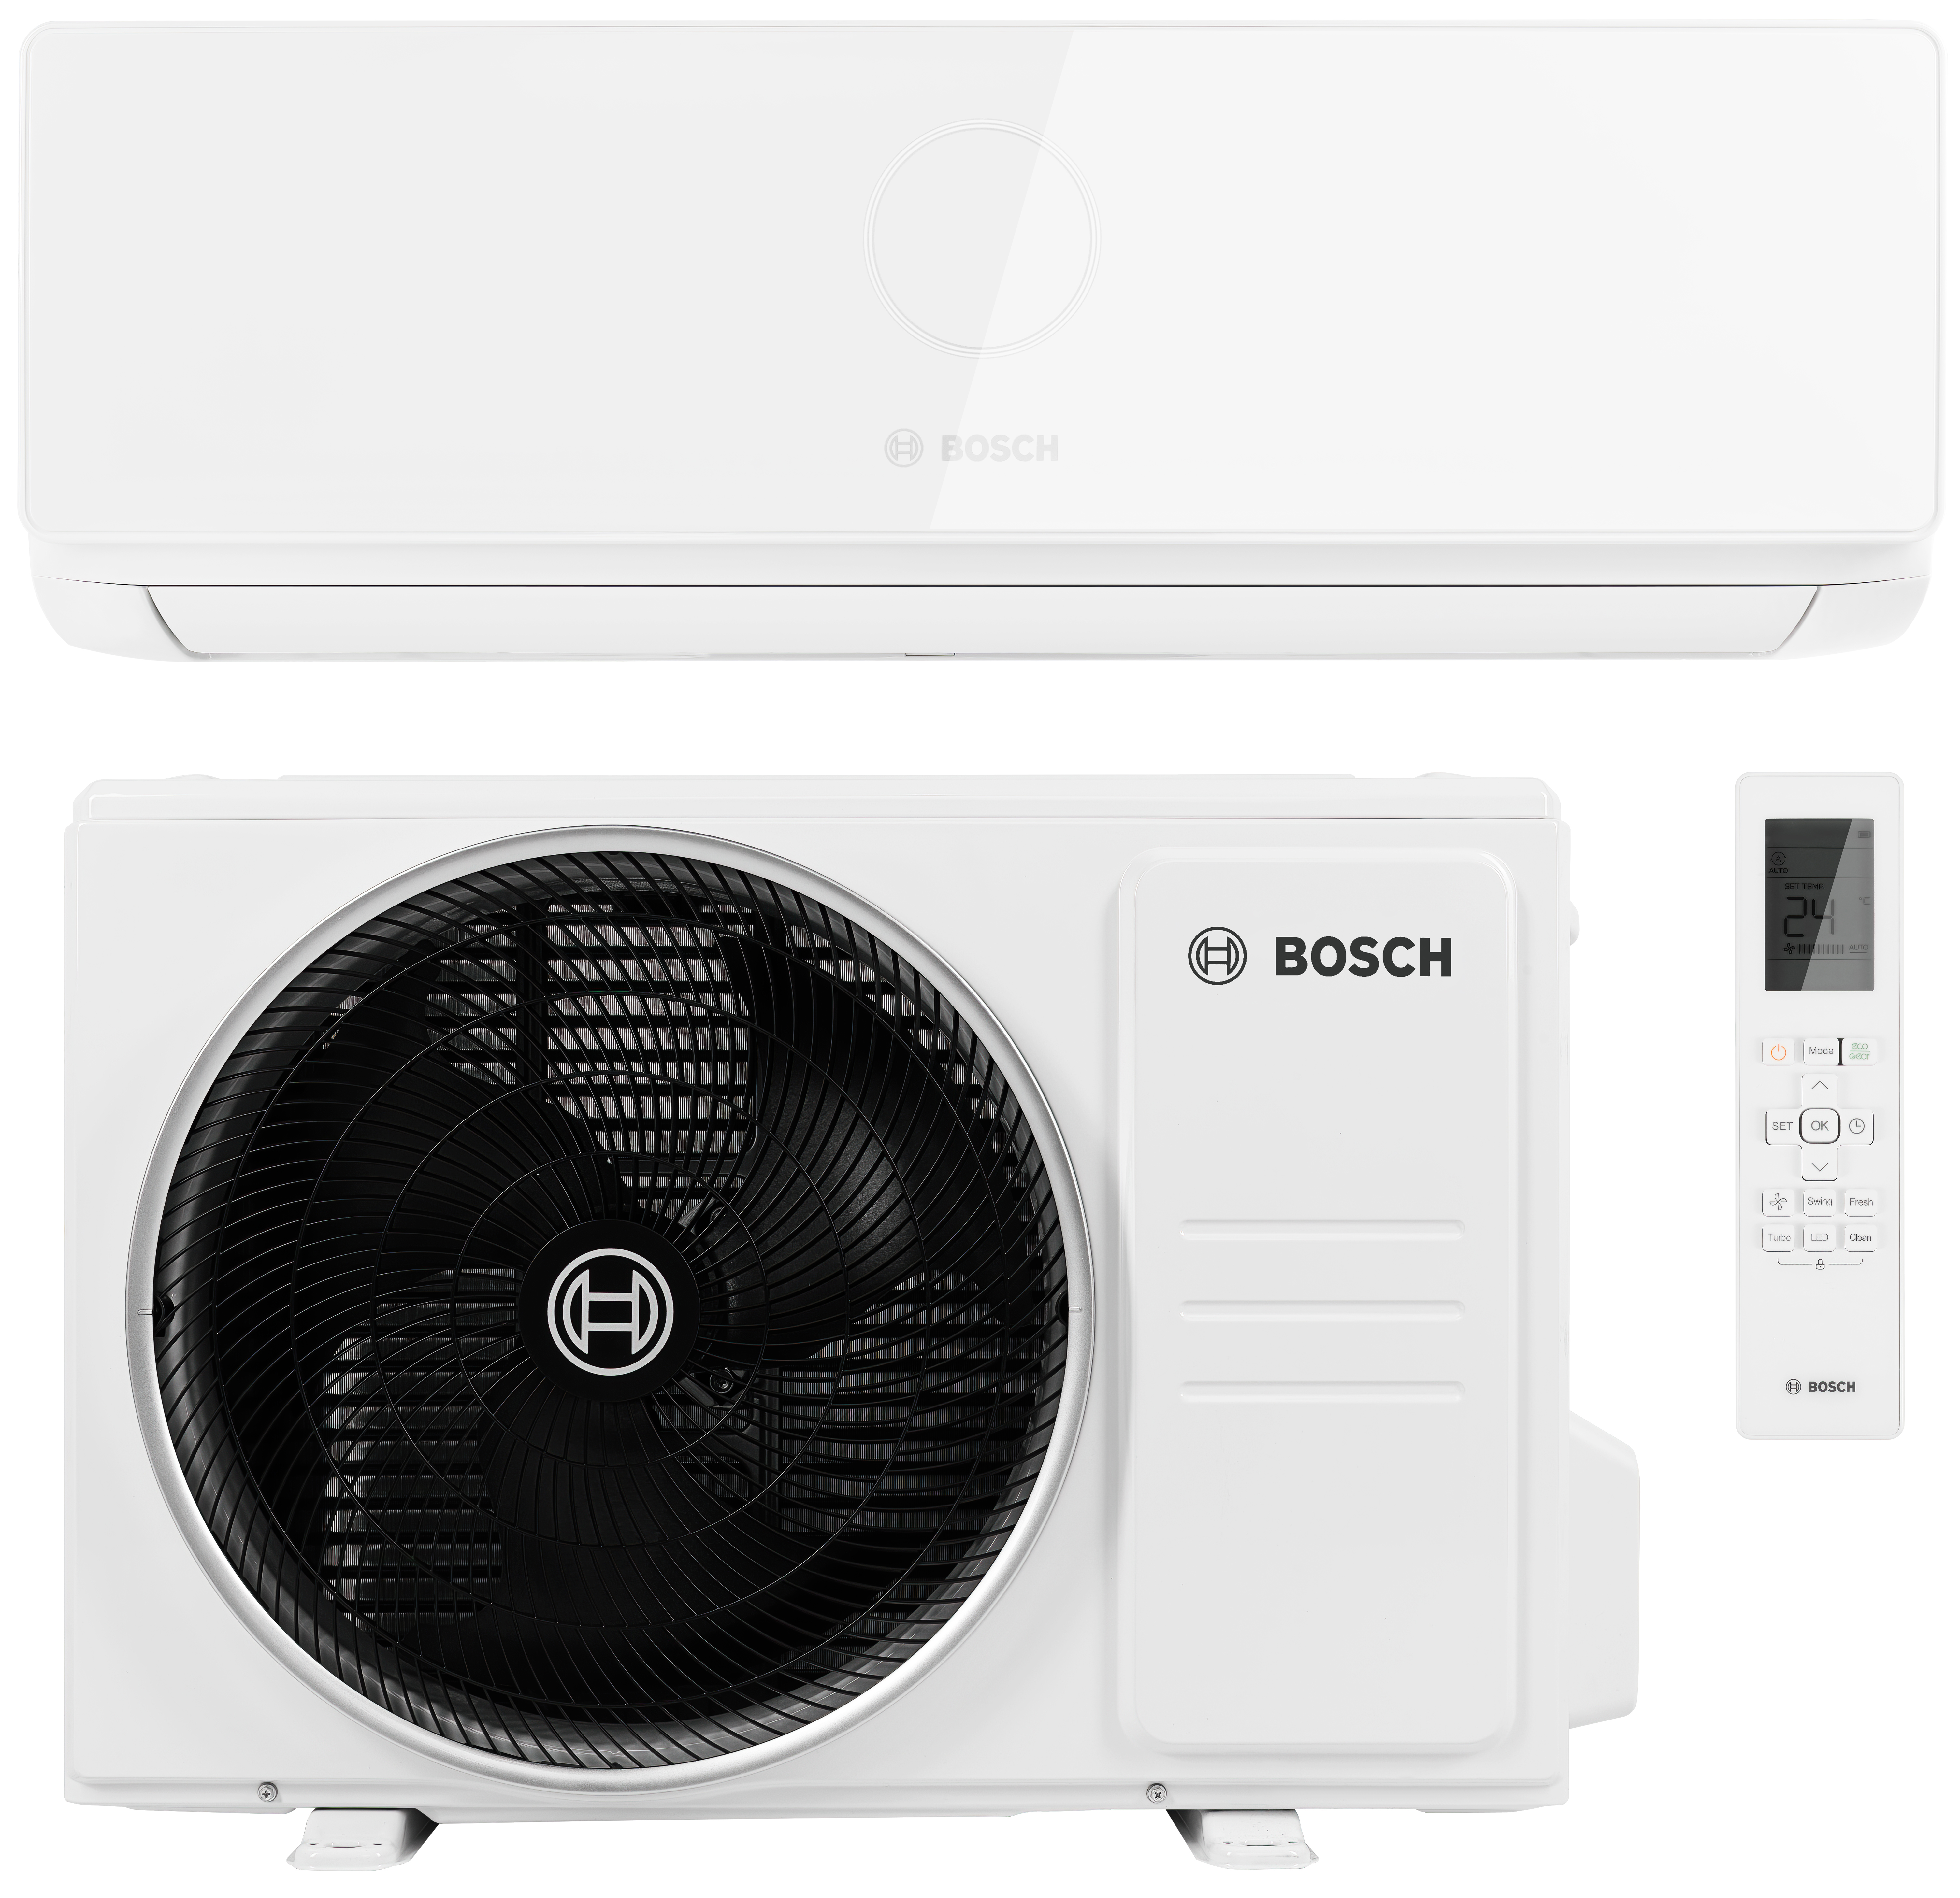 Тихий кондиционер с ночным режимом Bosch Climate CL5000i 35 E